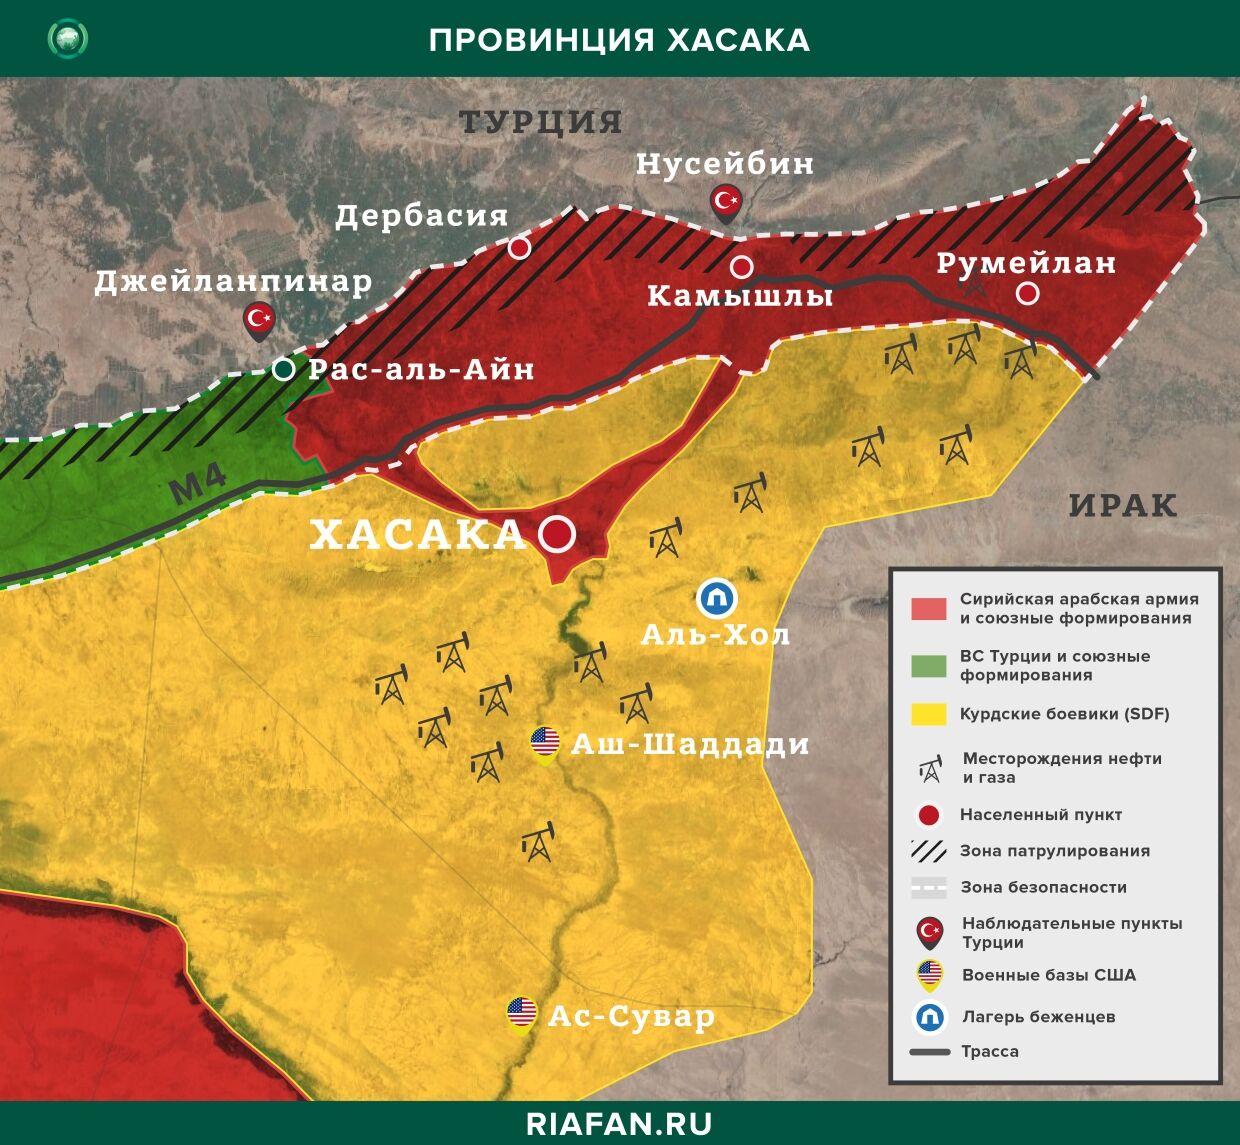 Resultados diarios de Siria para 27 Mayo 06.00: в Сирии отменен комендантский час, протурецкие силы вербуют боевиков в ряды ПНС